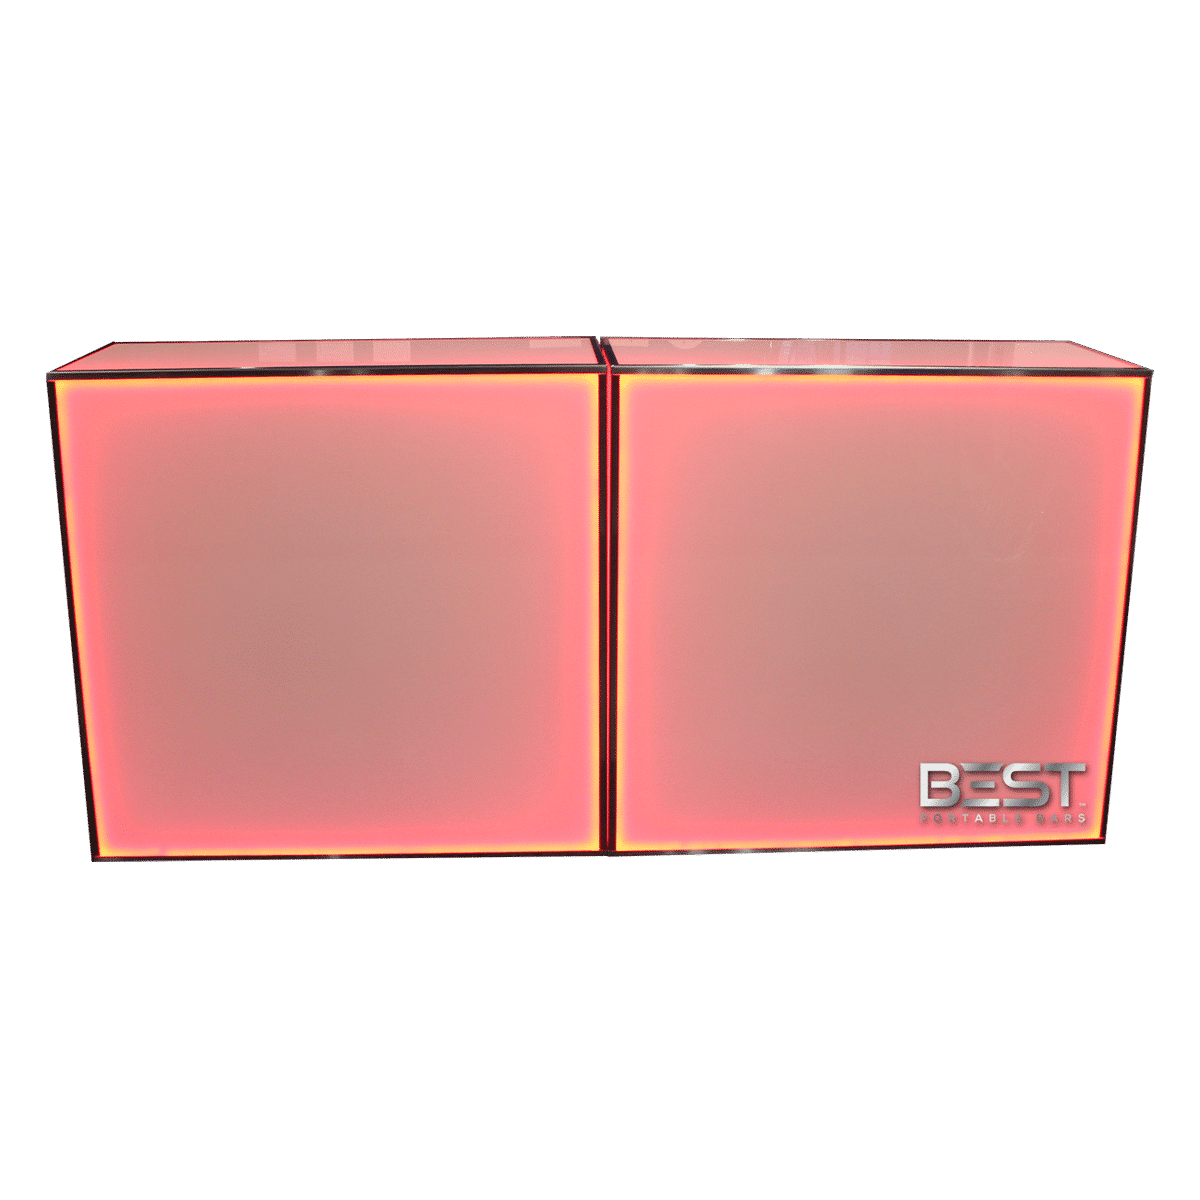 Bars portables PlexBoX en acrylique plexi rétro-éclairé avec lumière rouge, deux bars de 4 pieds côte à côte